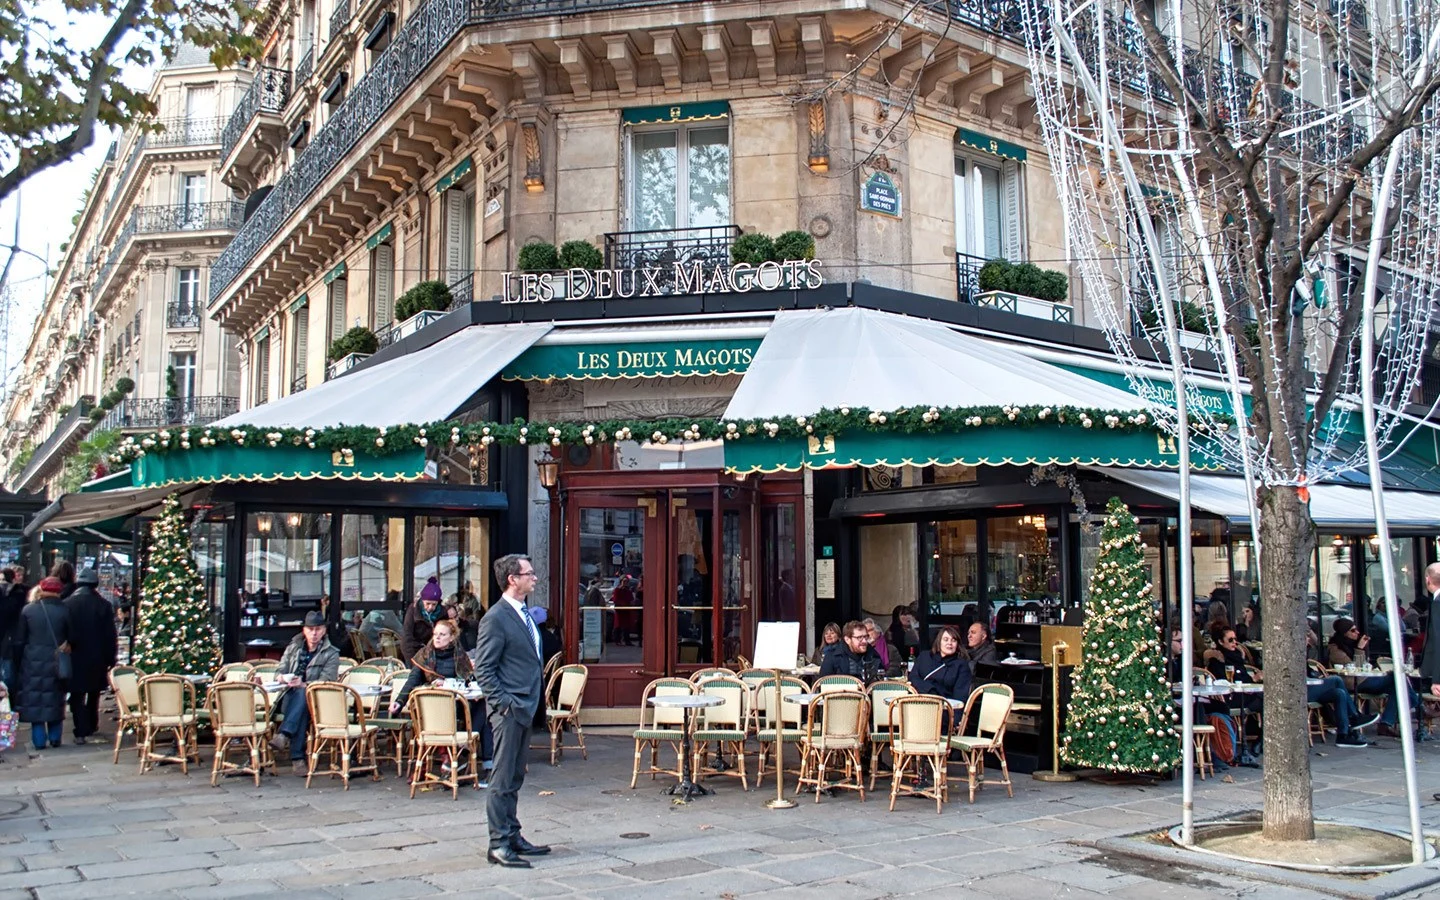 The Deux Magots café in St Germain, Paris